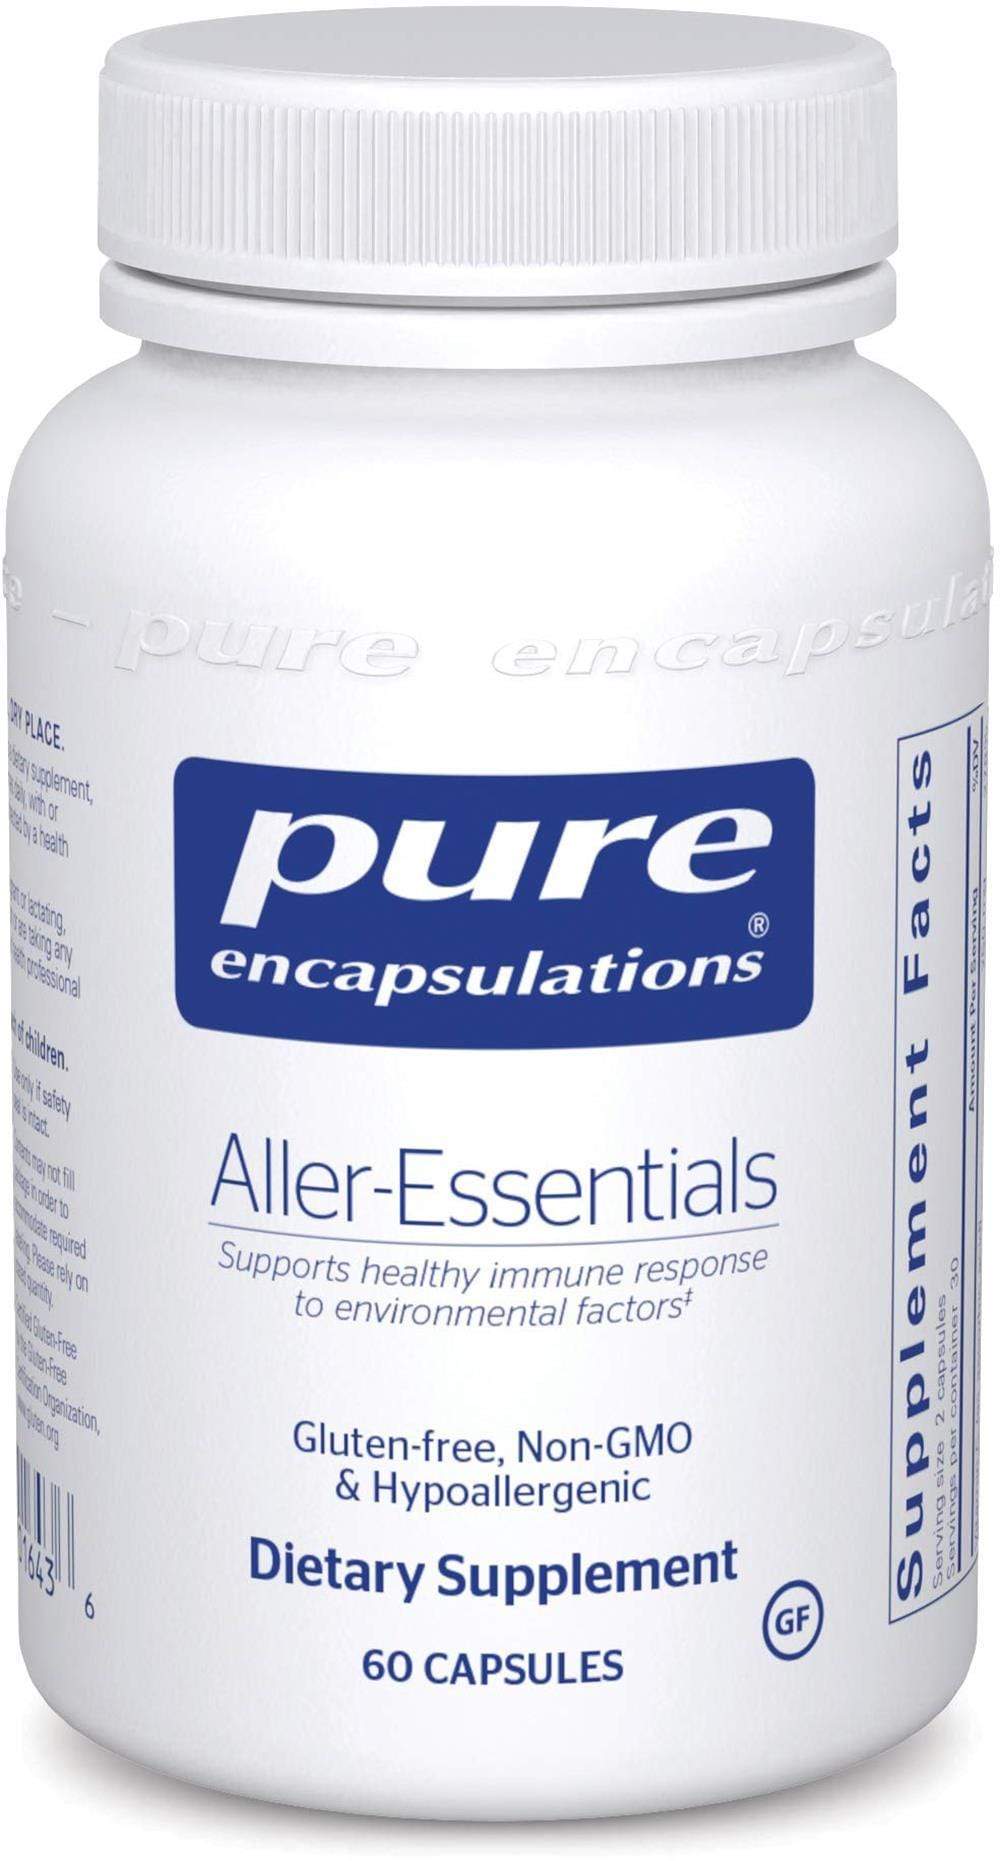 Pure Encapsulations Aller-Essentials -- 60 Capsules 60 capsules